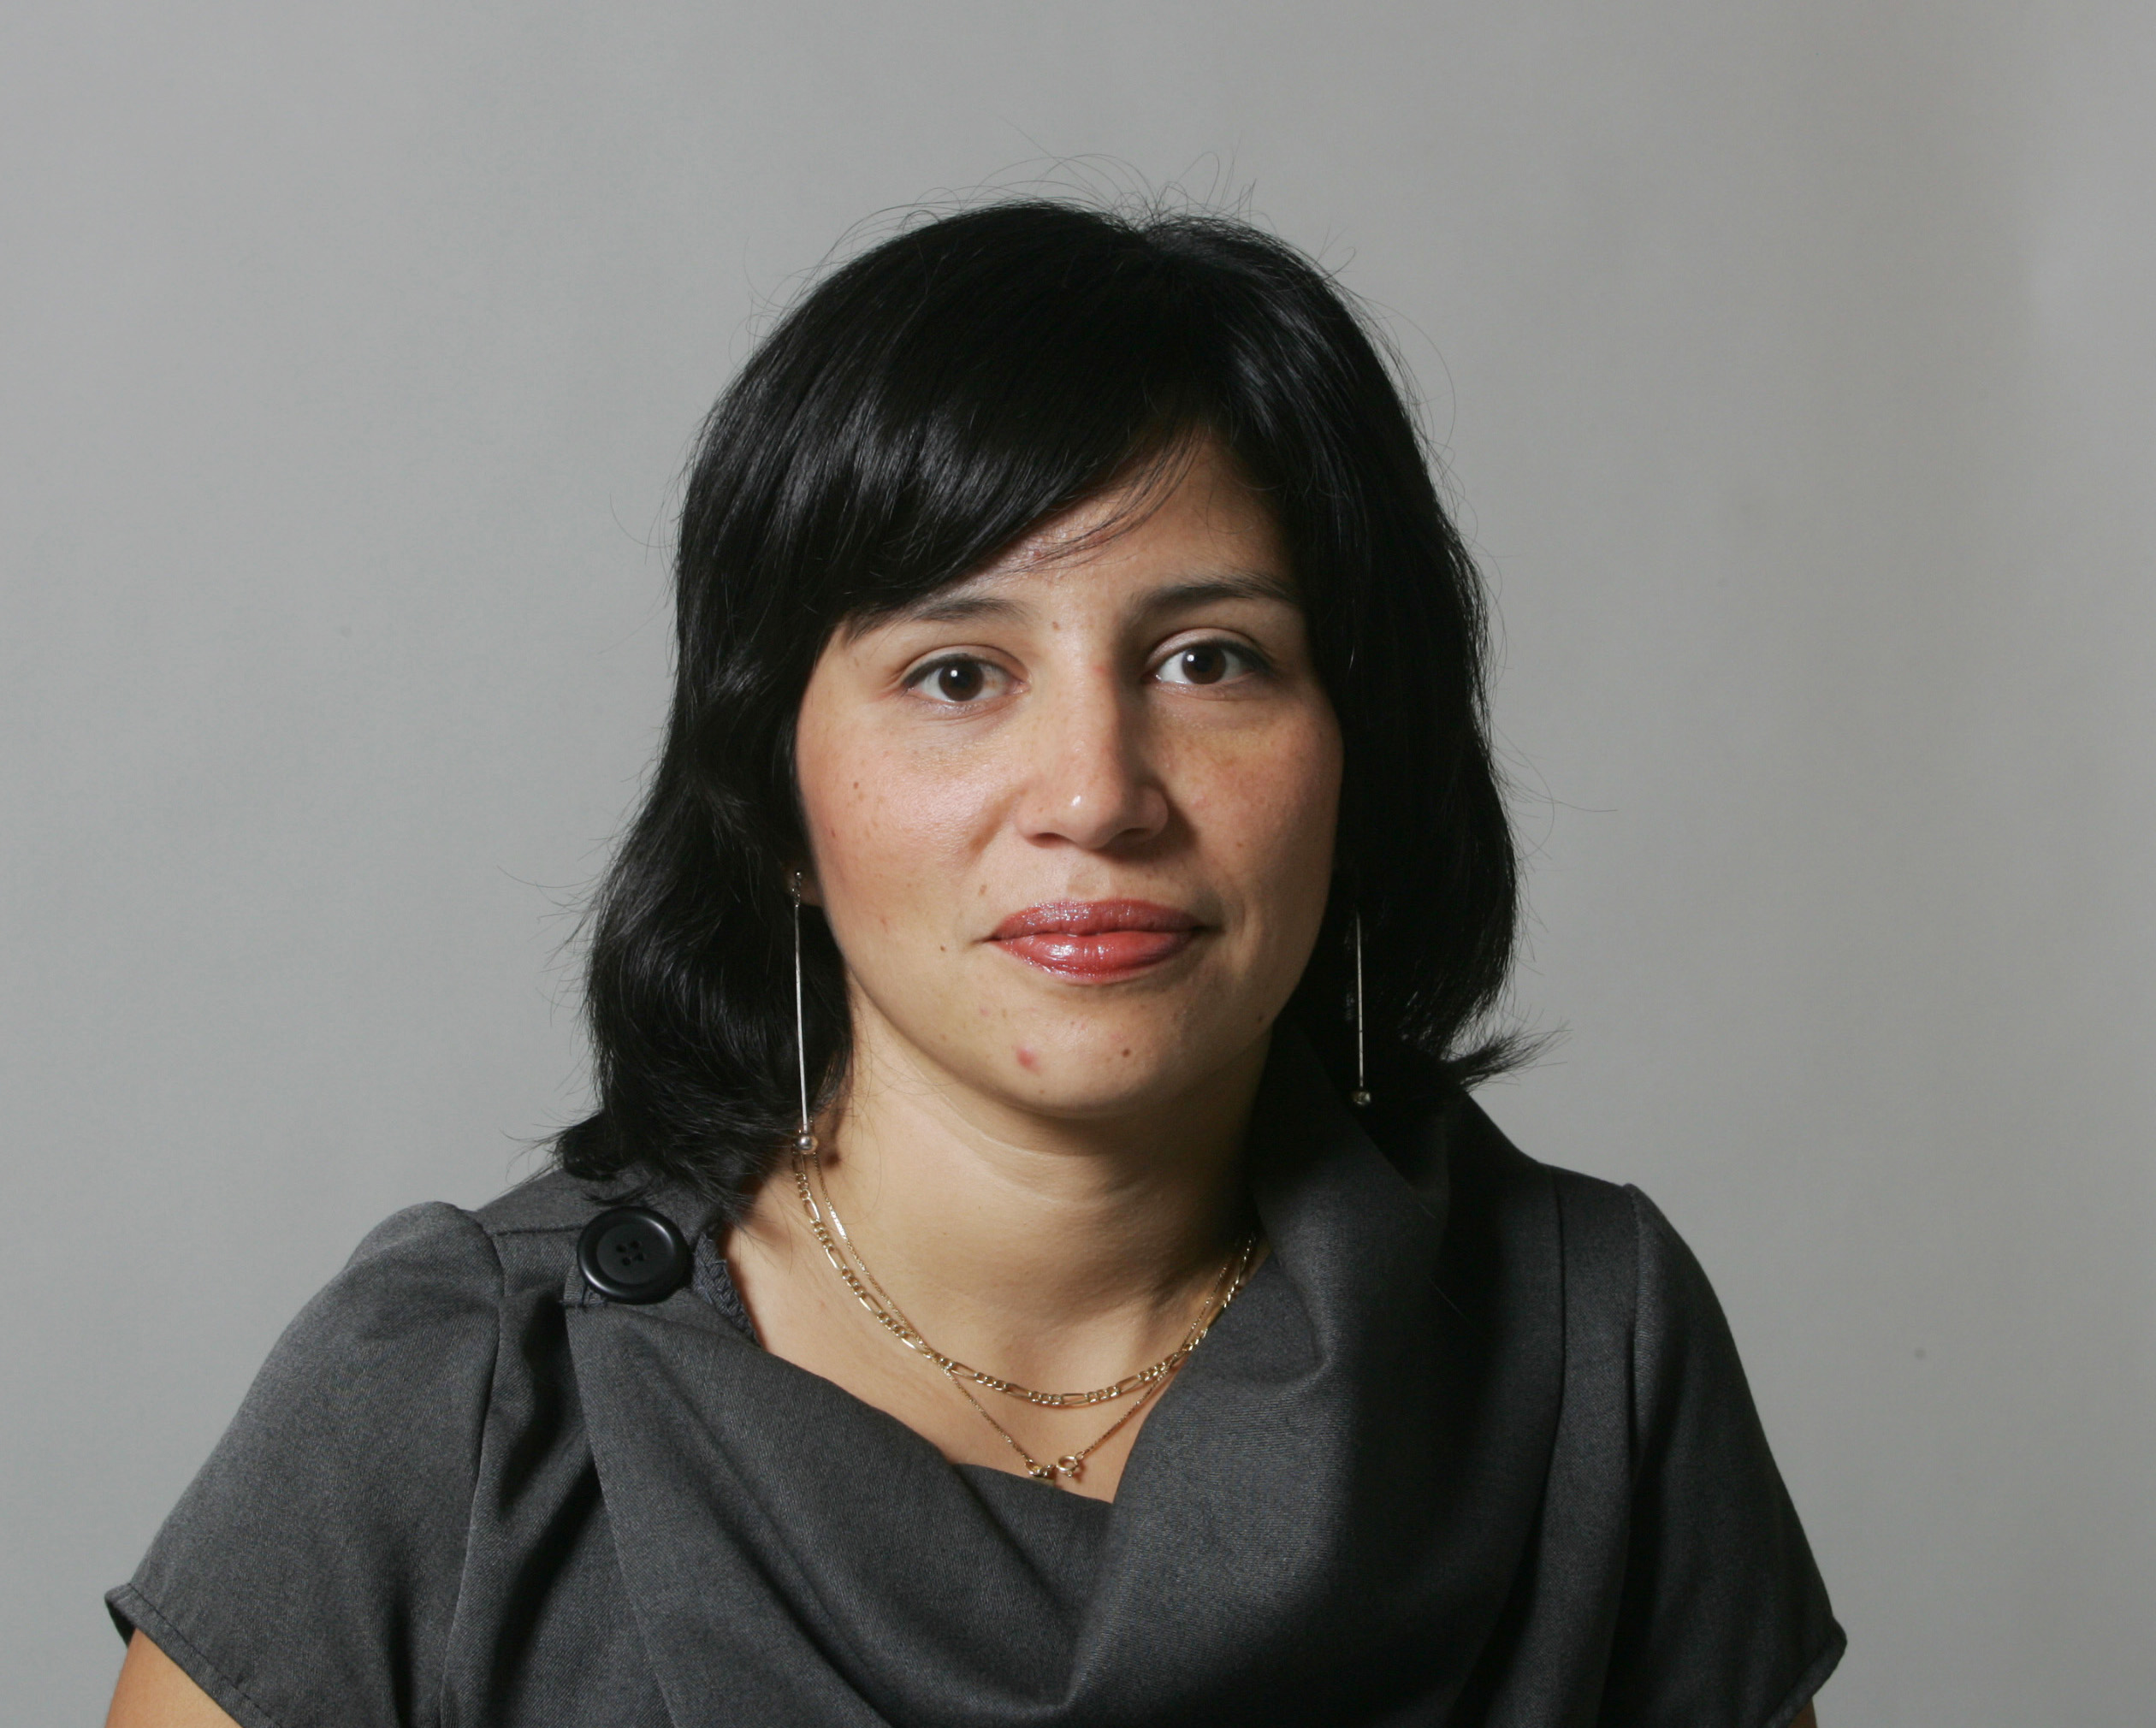 Rossana har tidigare jobbat som journalist, vårdbiträde och lärare. 